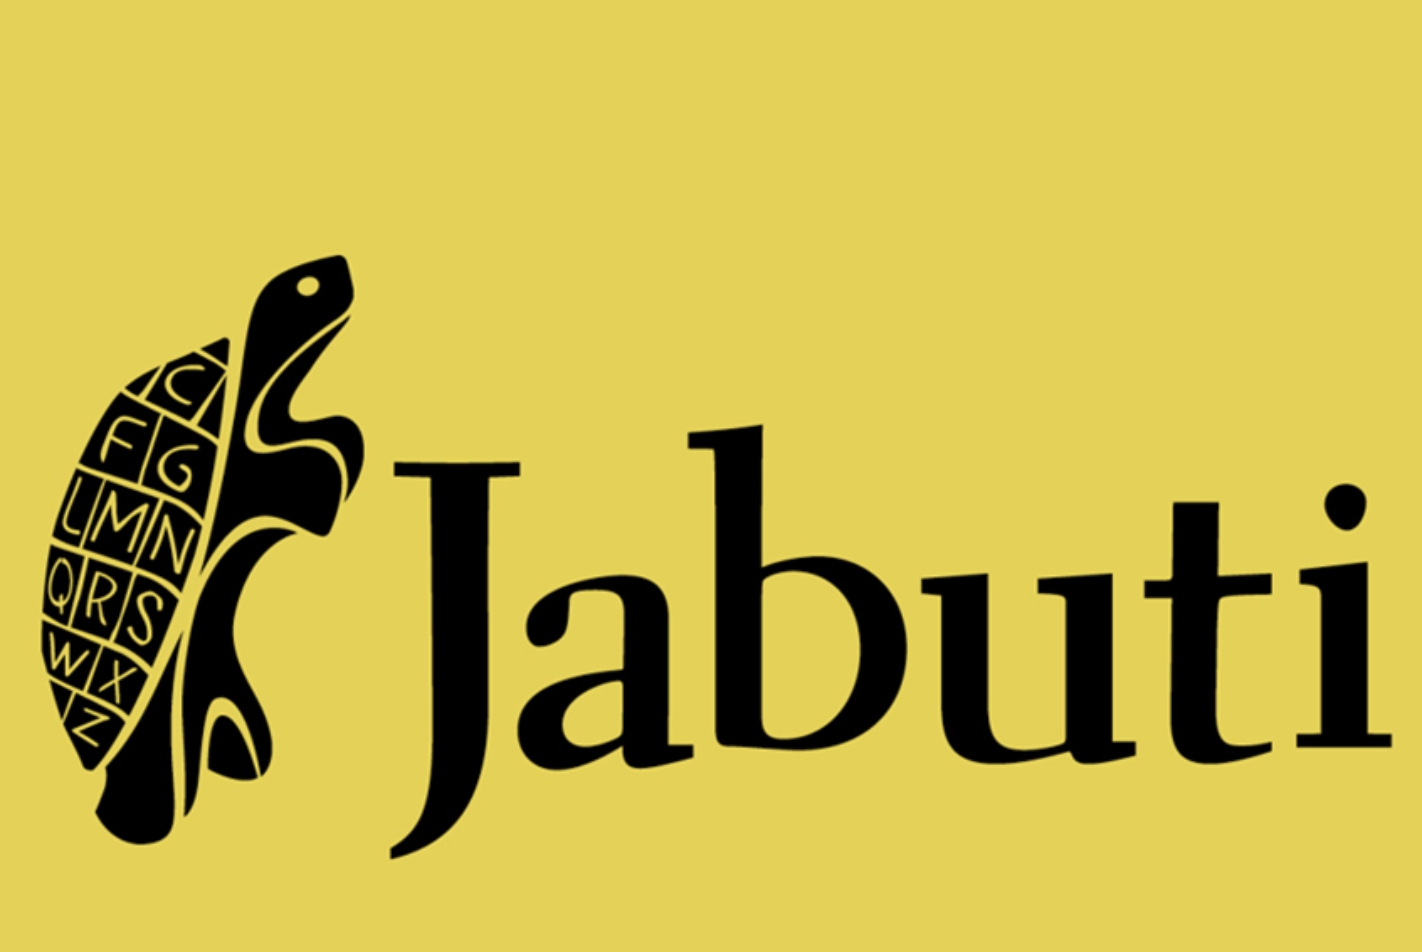 Imagem com o logo do prêmio jabuti.